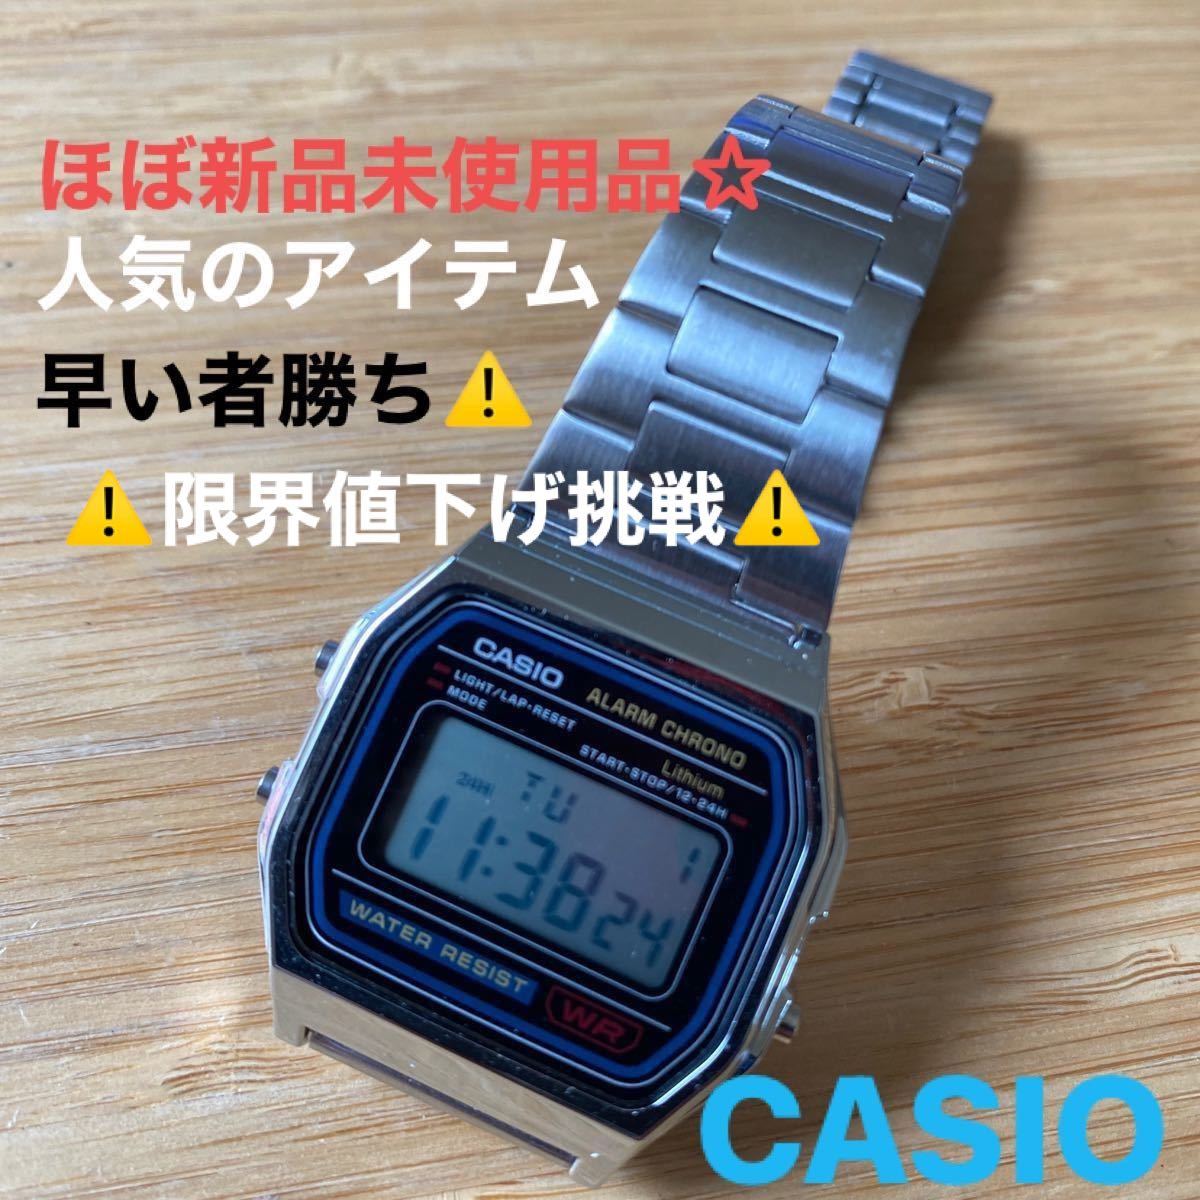 人気メーカー・ブランド CASIO 新品未使用 匿名配送 メンズ 腕時計 デジタル 金属ベルト